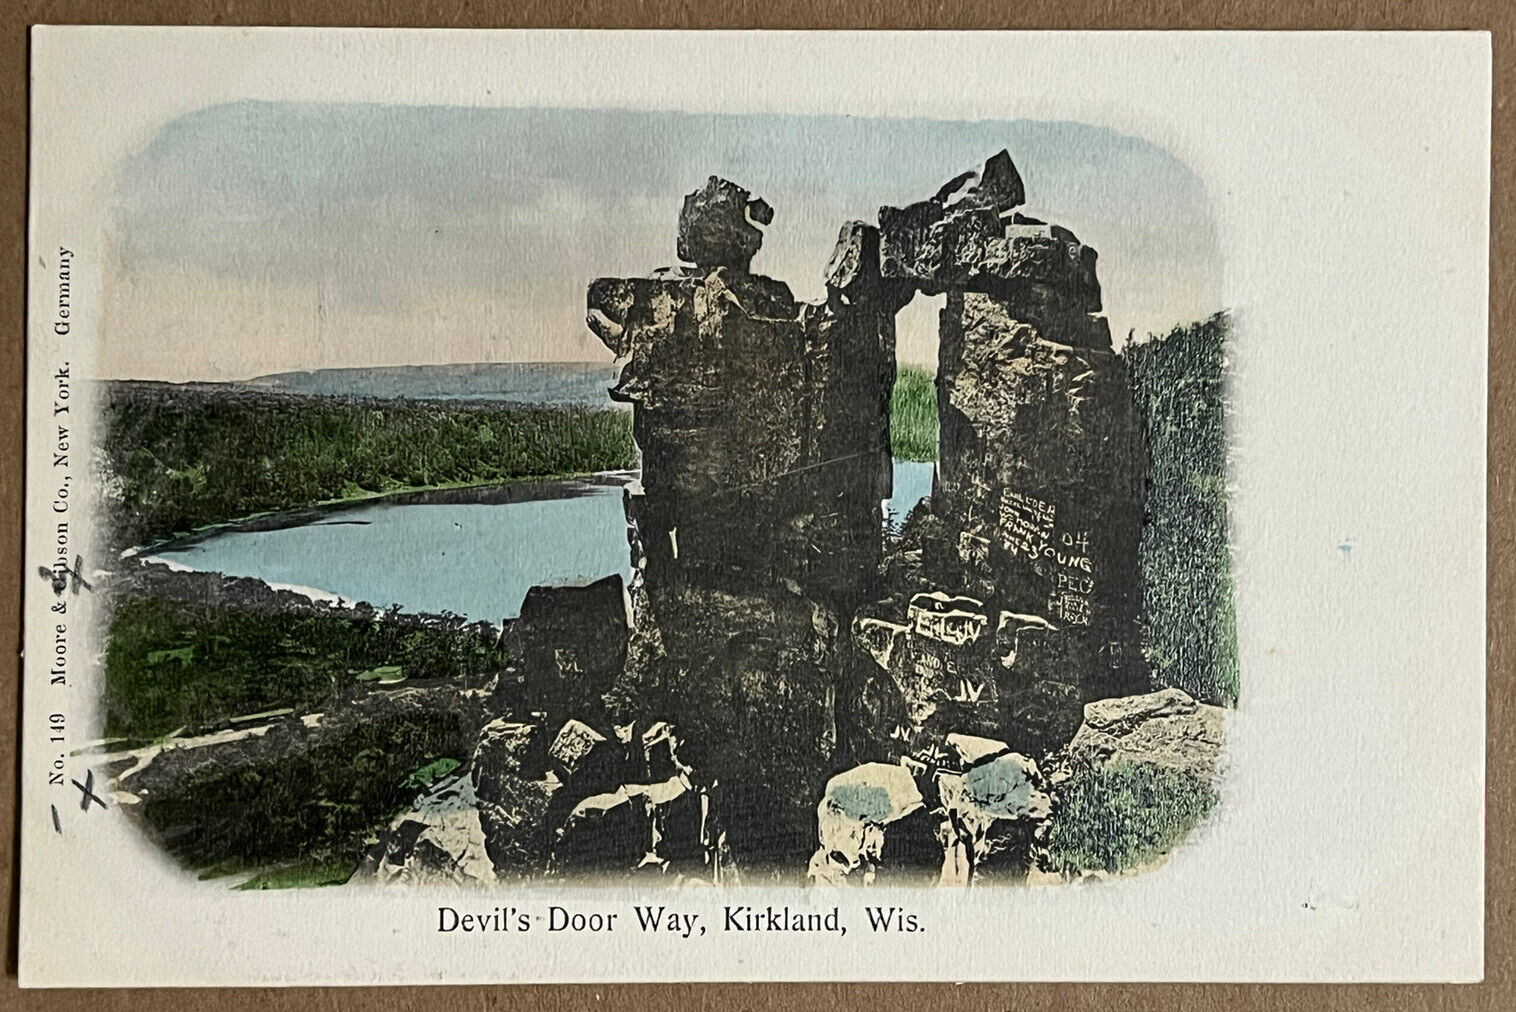 Kirkland Wisconsin Devils Door Way Antique Postcard c1900